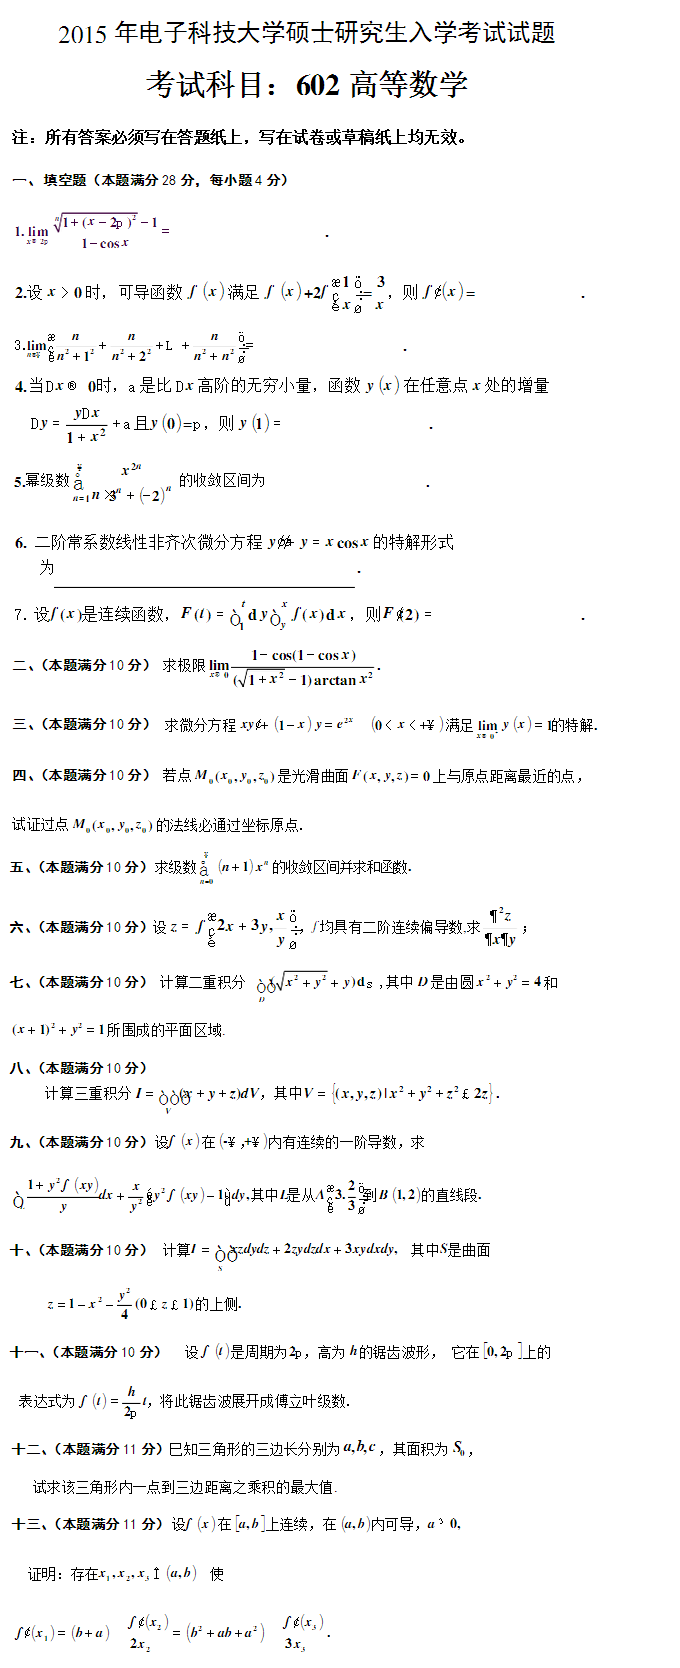 2015电子科技大学602考研数学真题（高等数学）.png